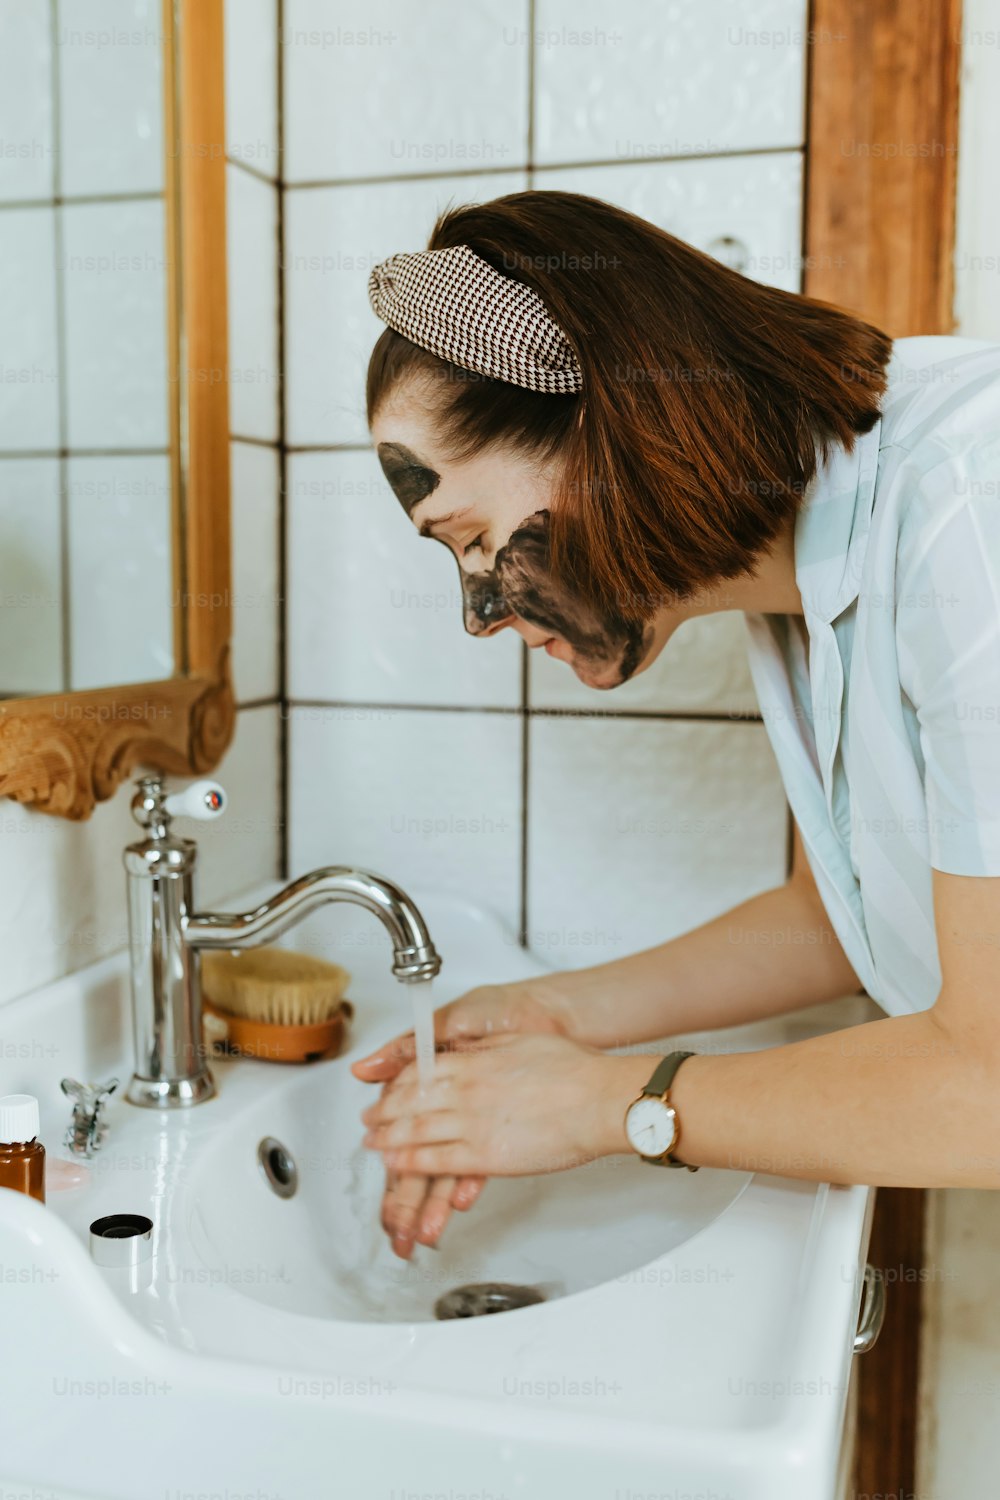 Una mujer lavándose las manos en el lavabo de un baño